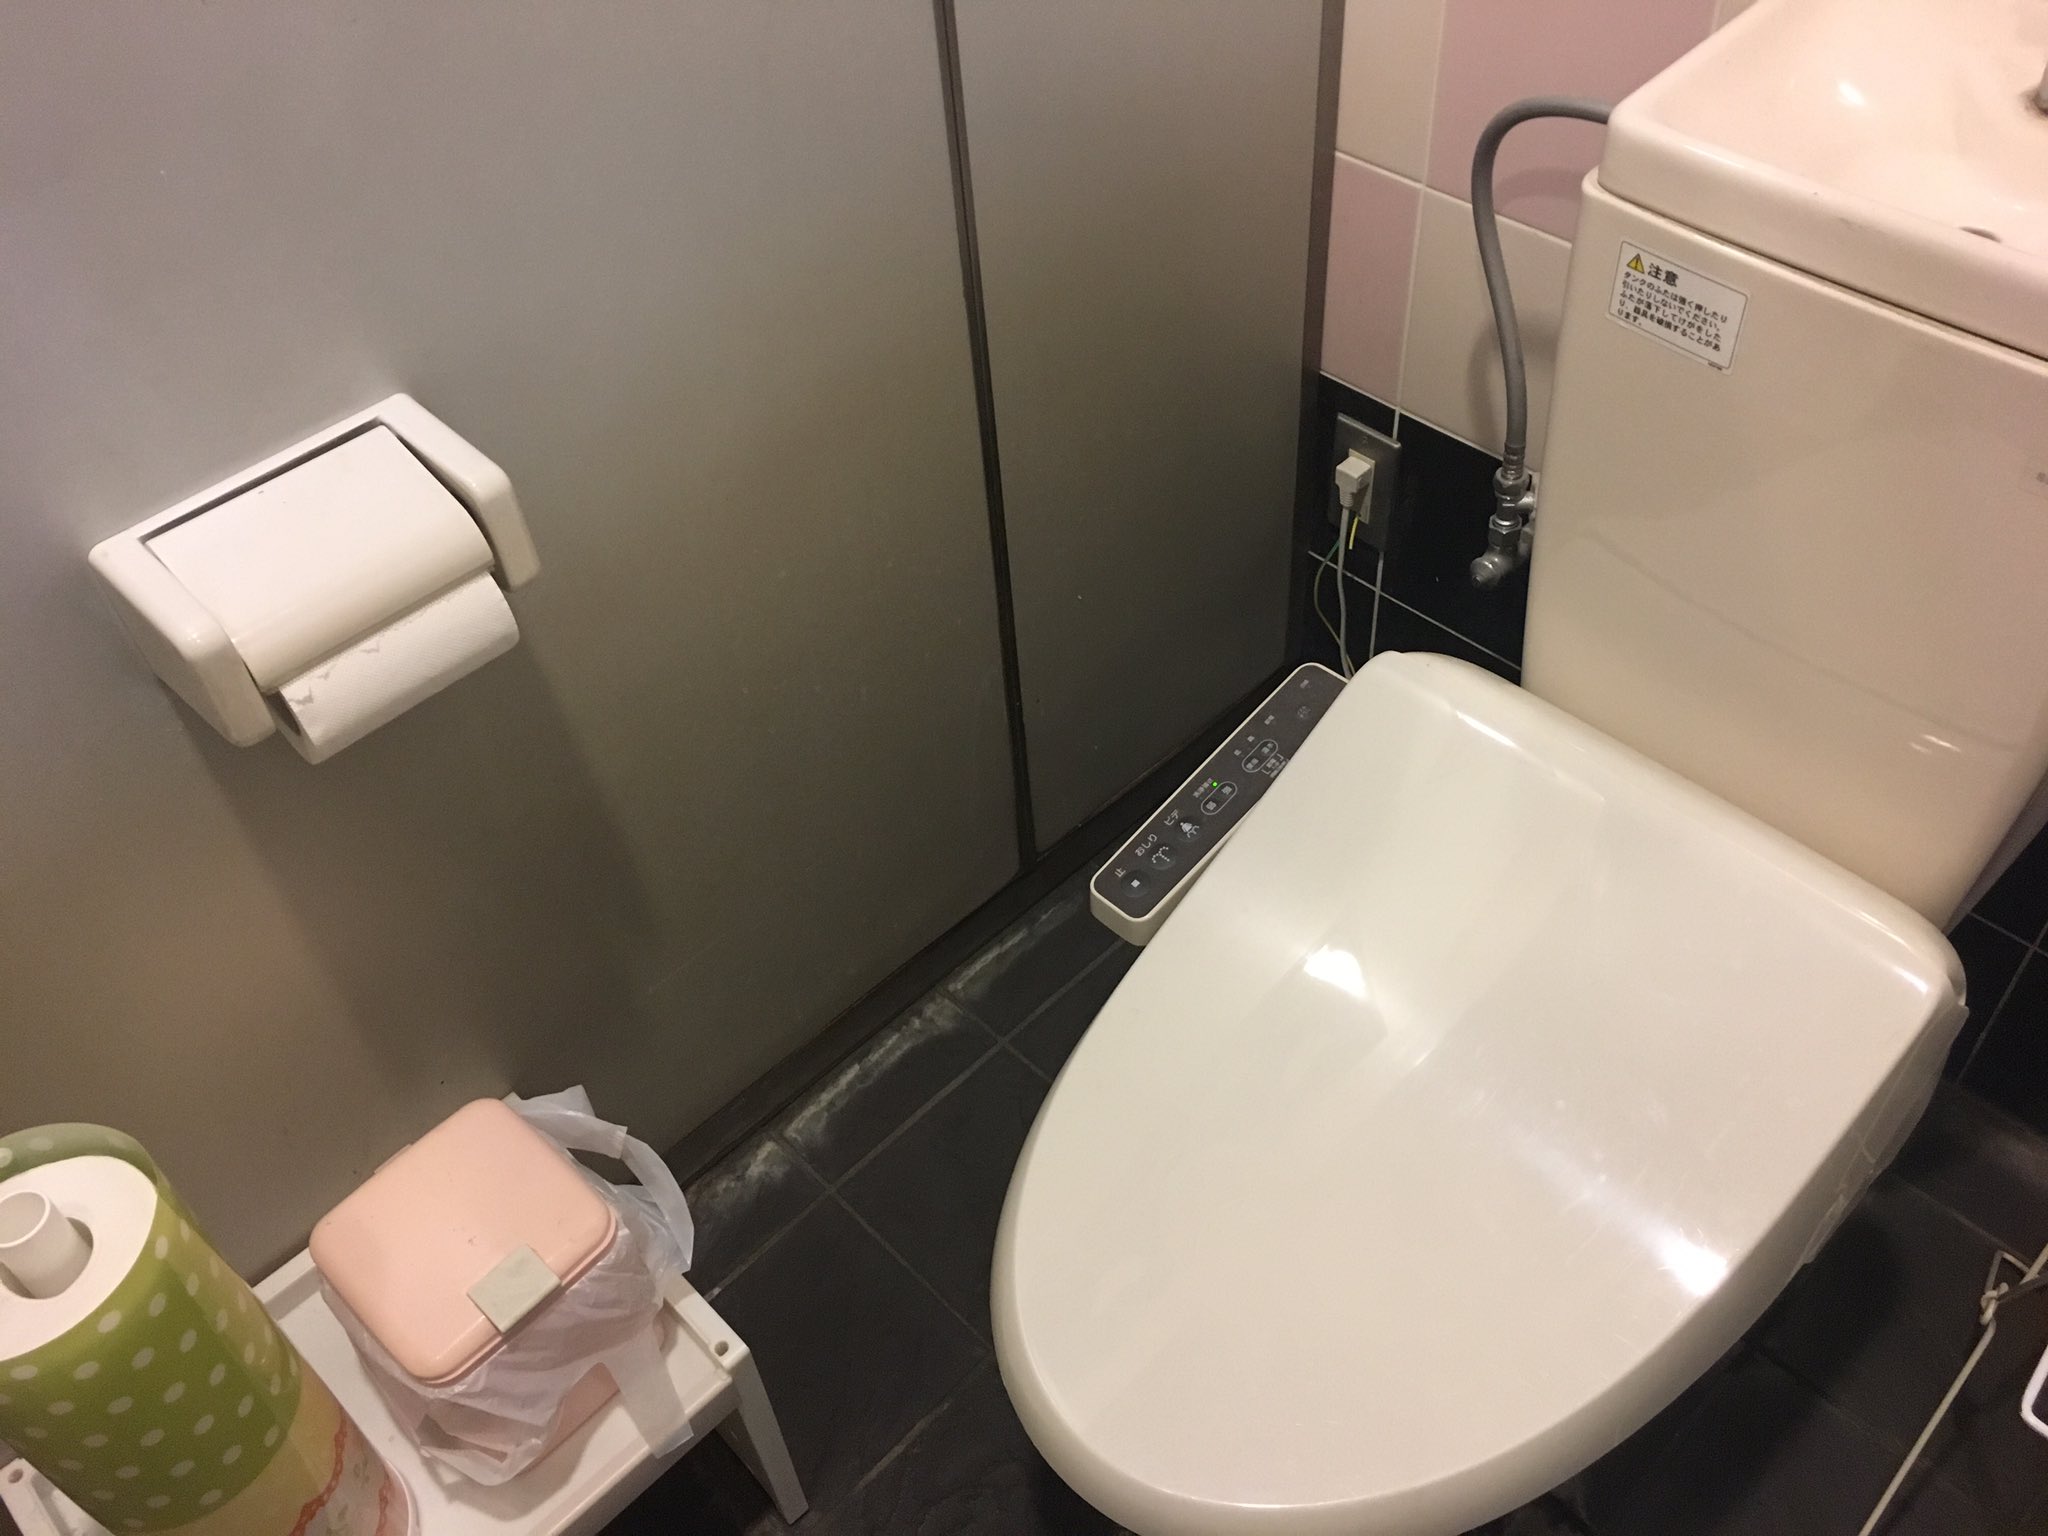 山口大学トイレ部たいし(笑) on Twitter "このトイレは小郡にある某ゲームセンターの女子トイレです